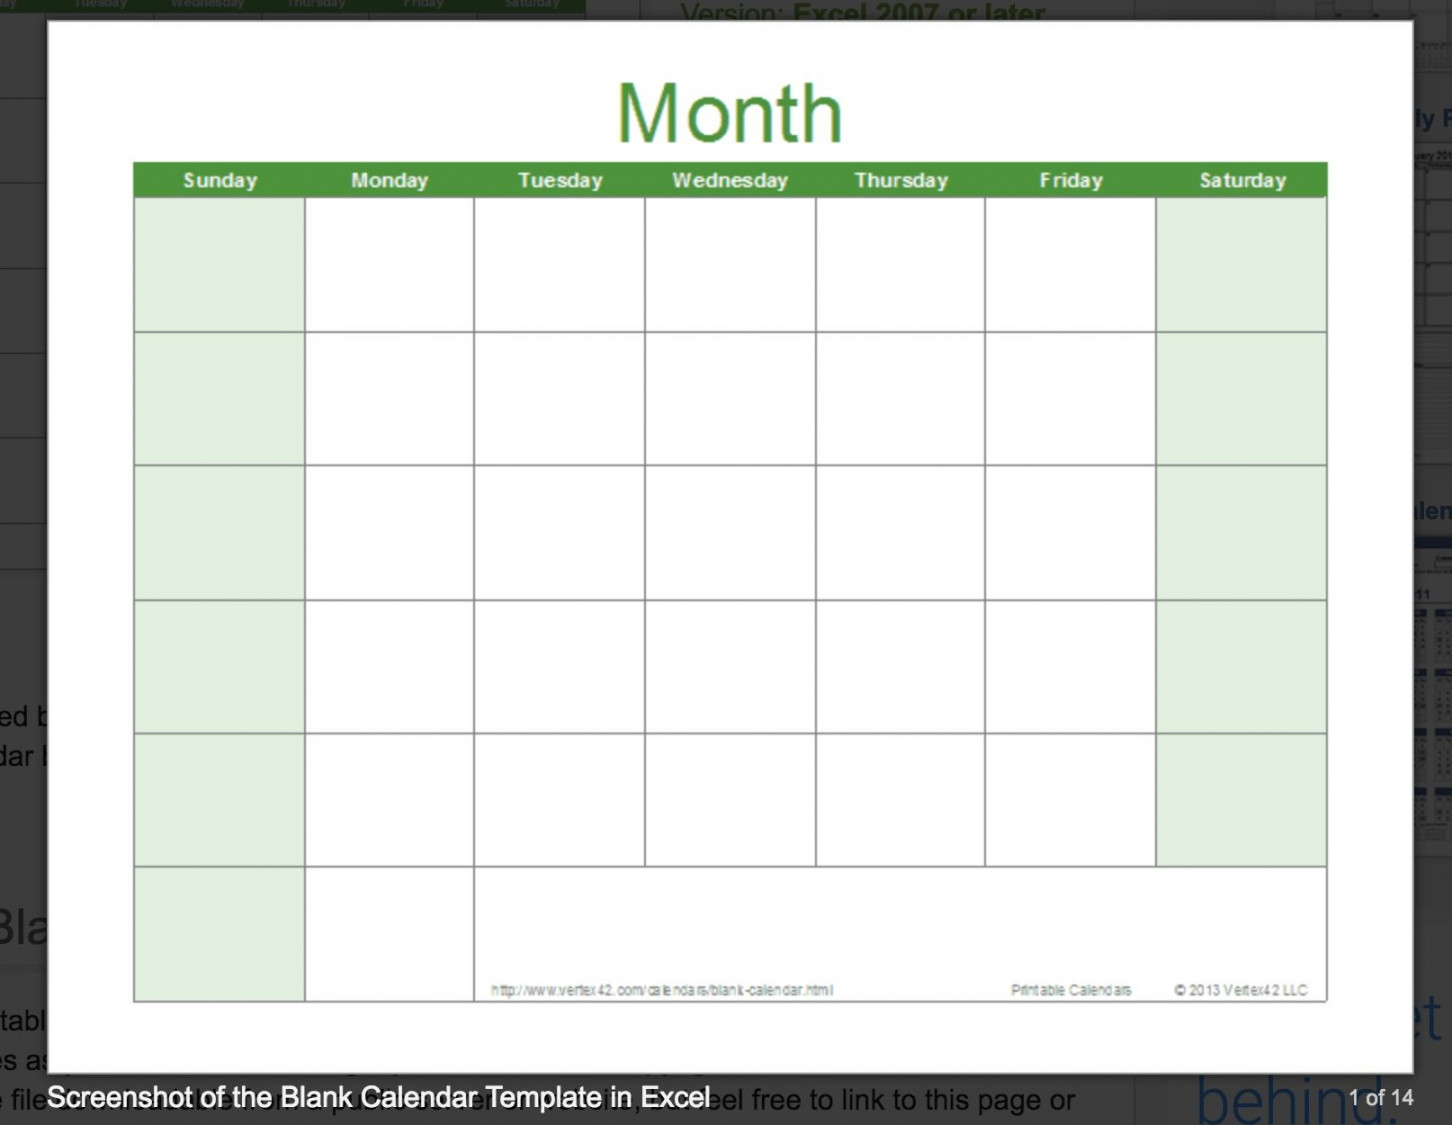 Calendar Template By Vertex  Blank monthly calendar template